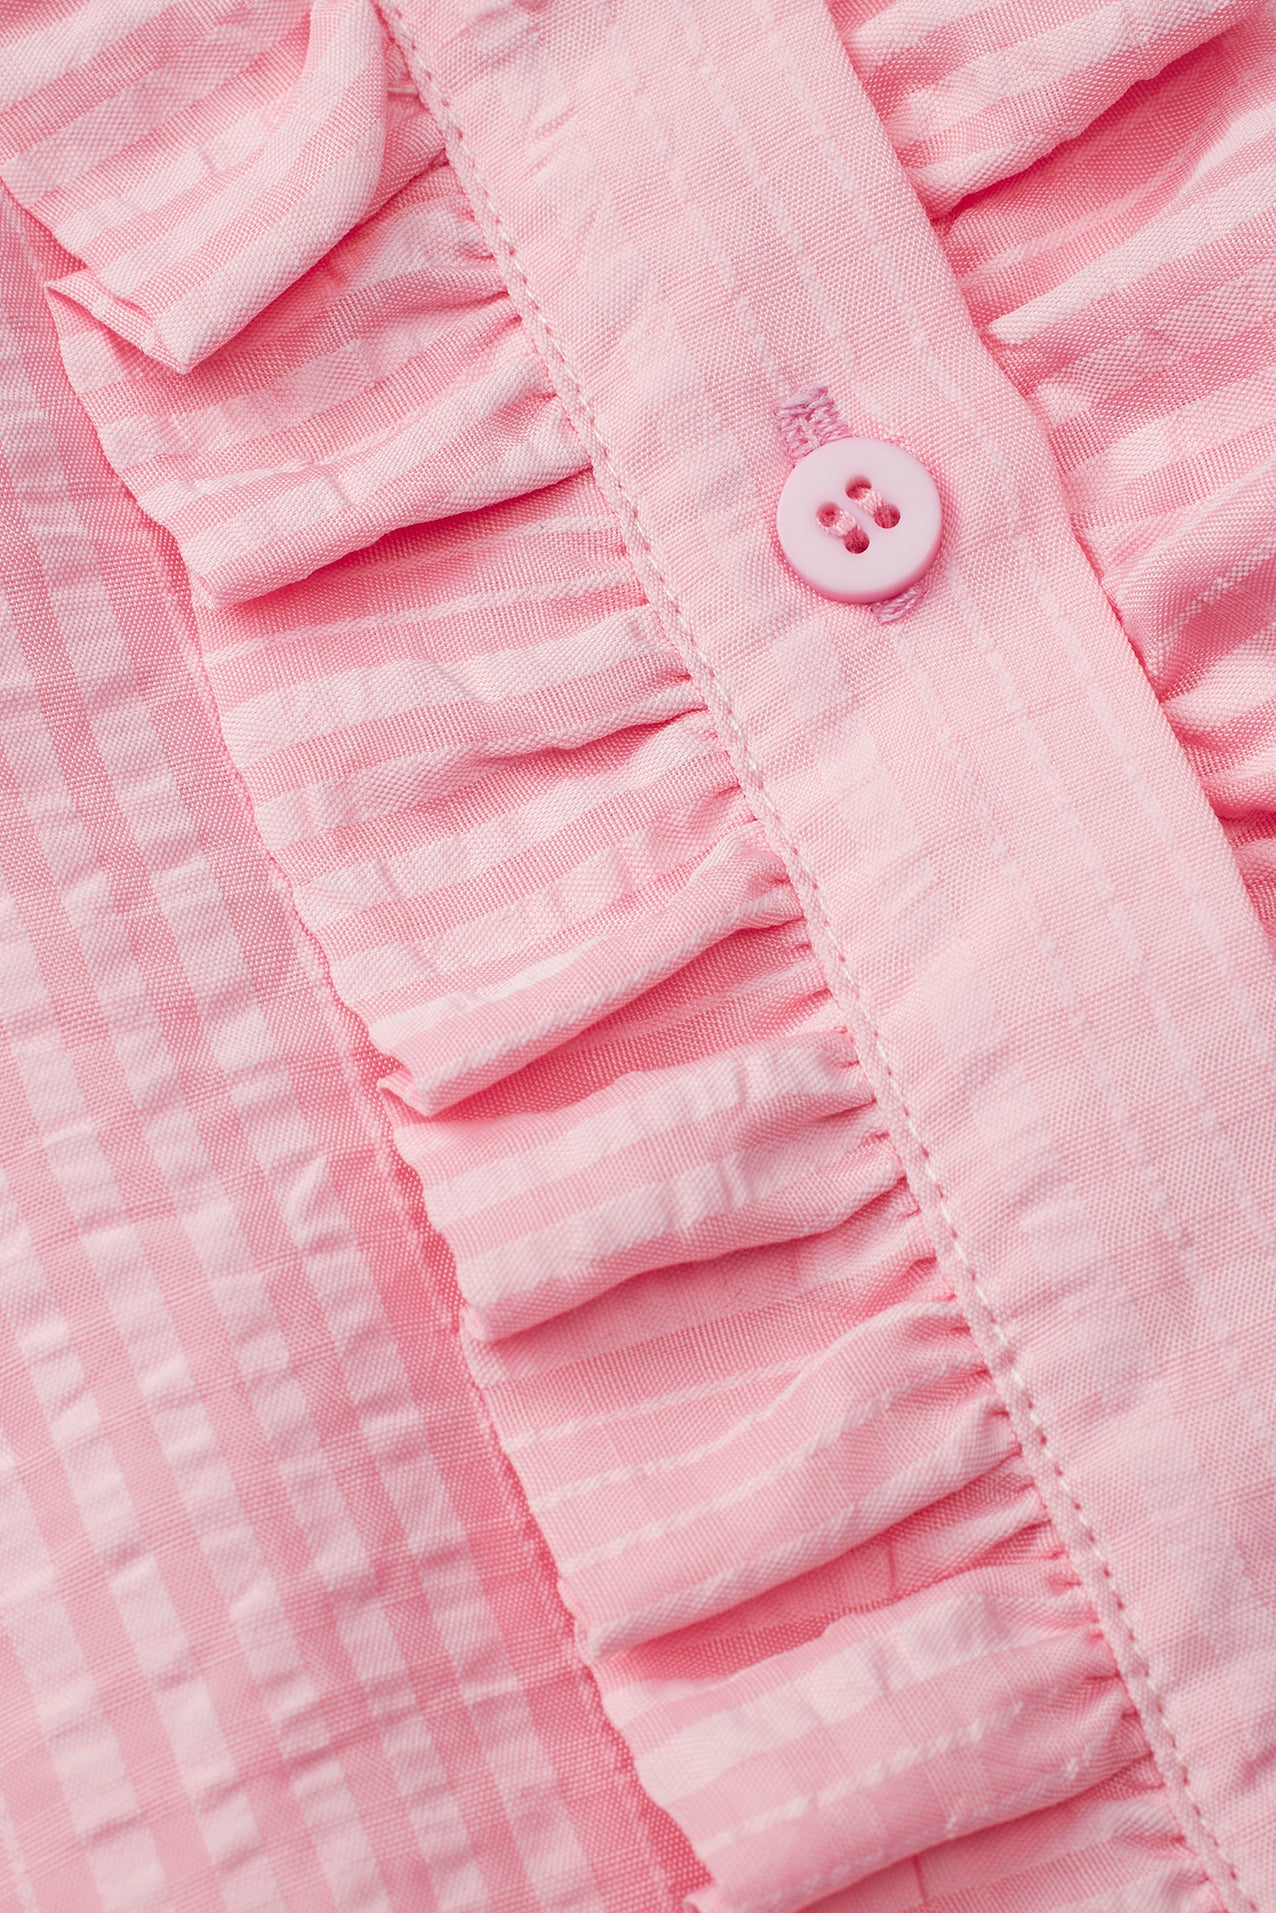 Lollys Laundry PerthLL Shirt 3/4 Shirt 51 Pink